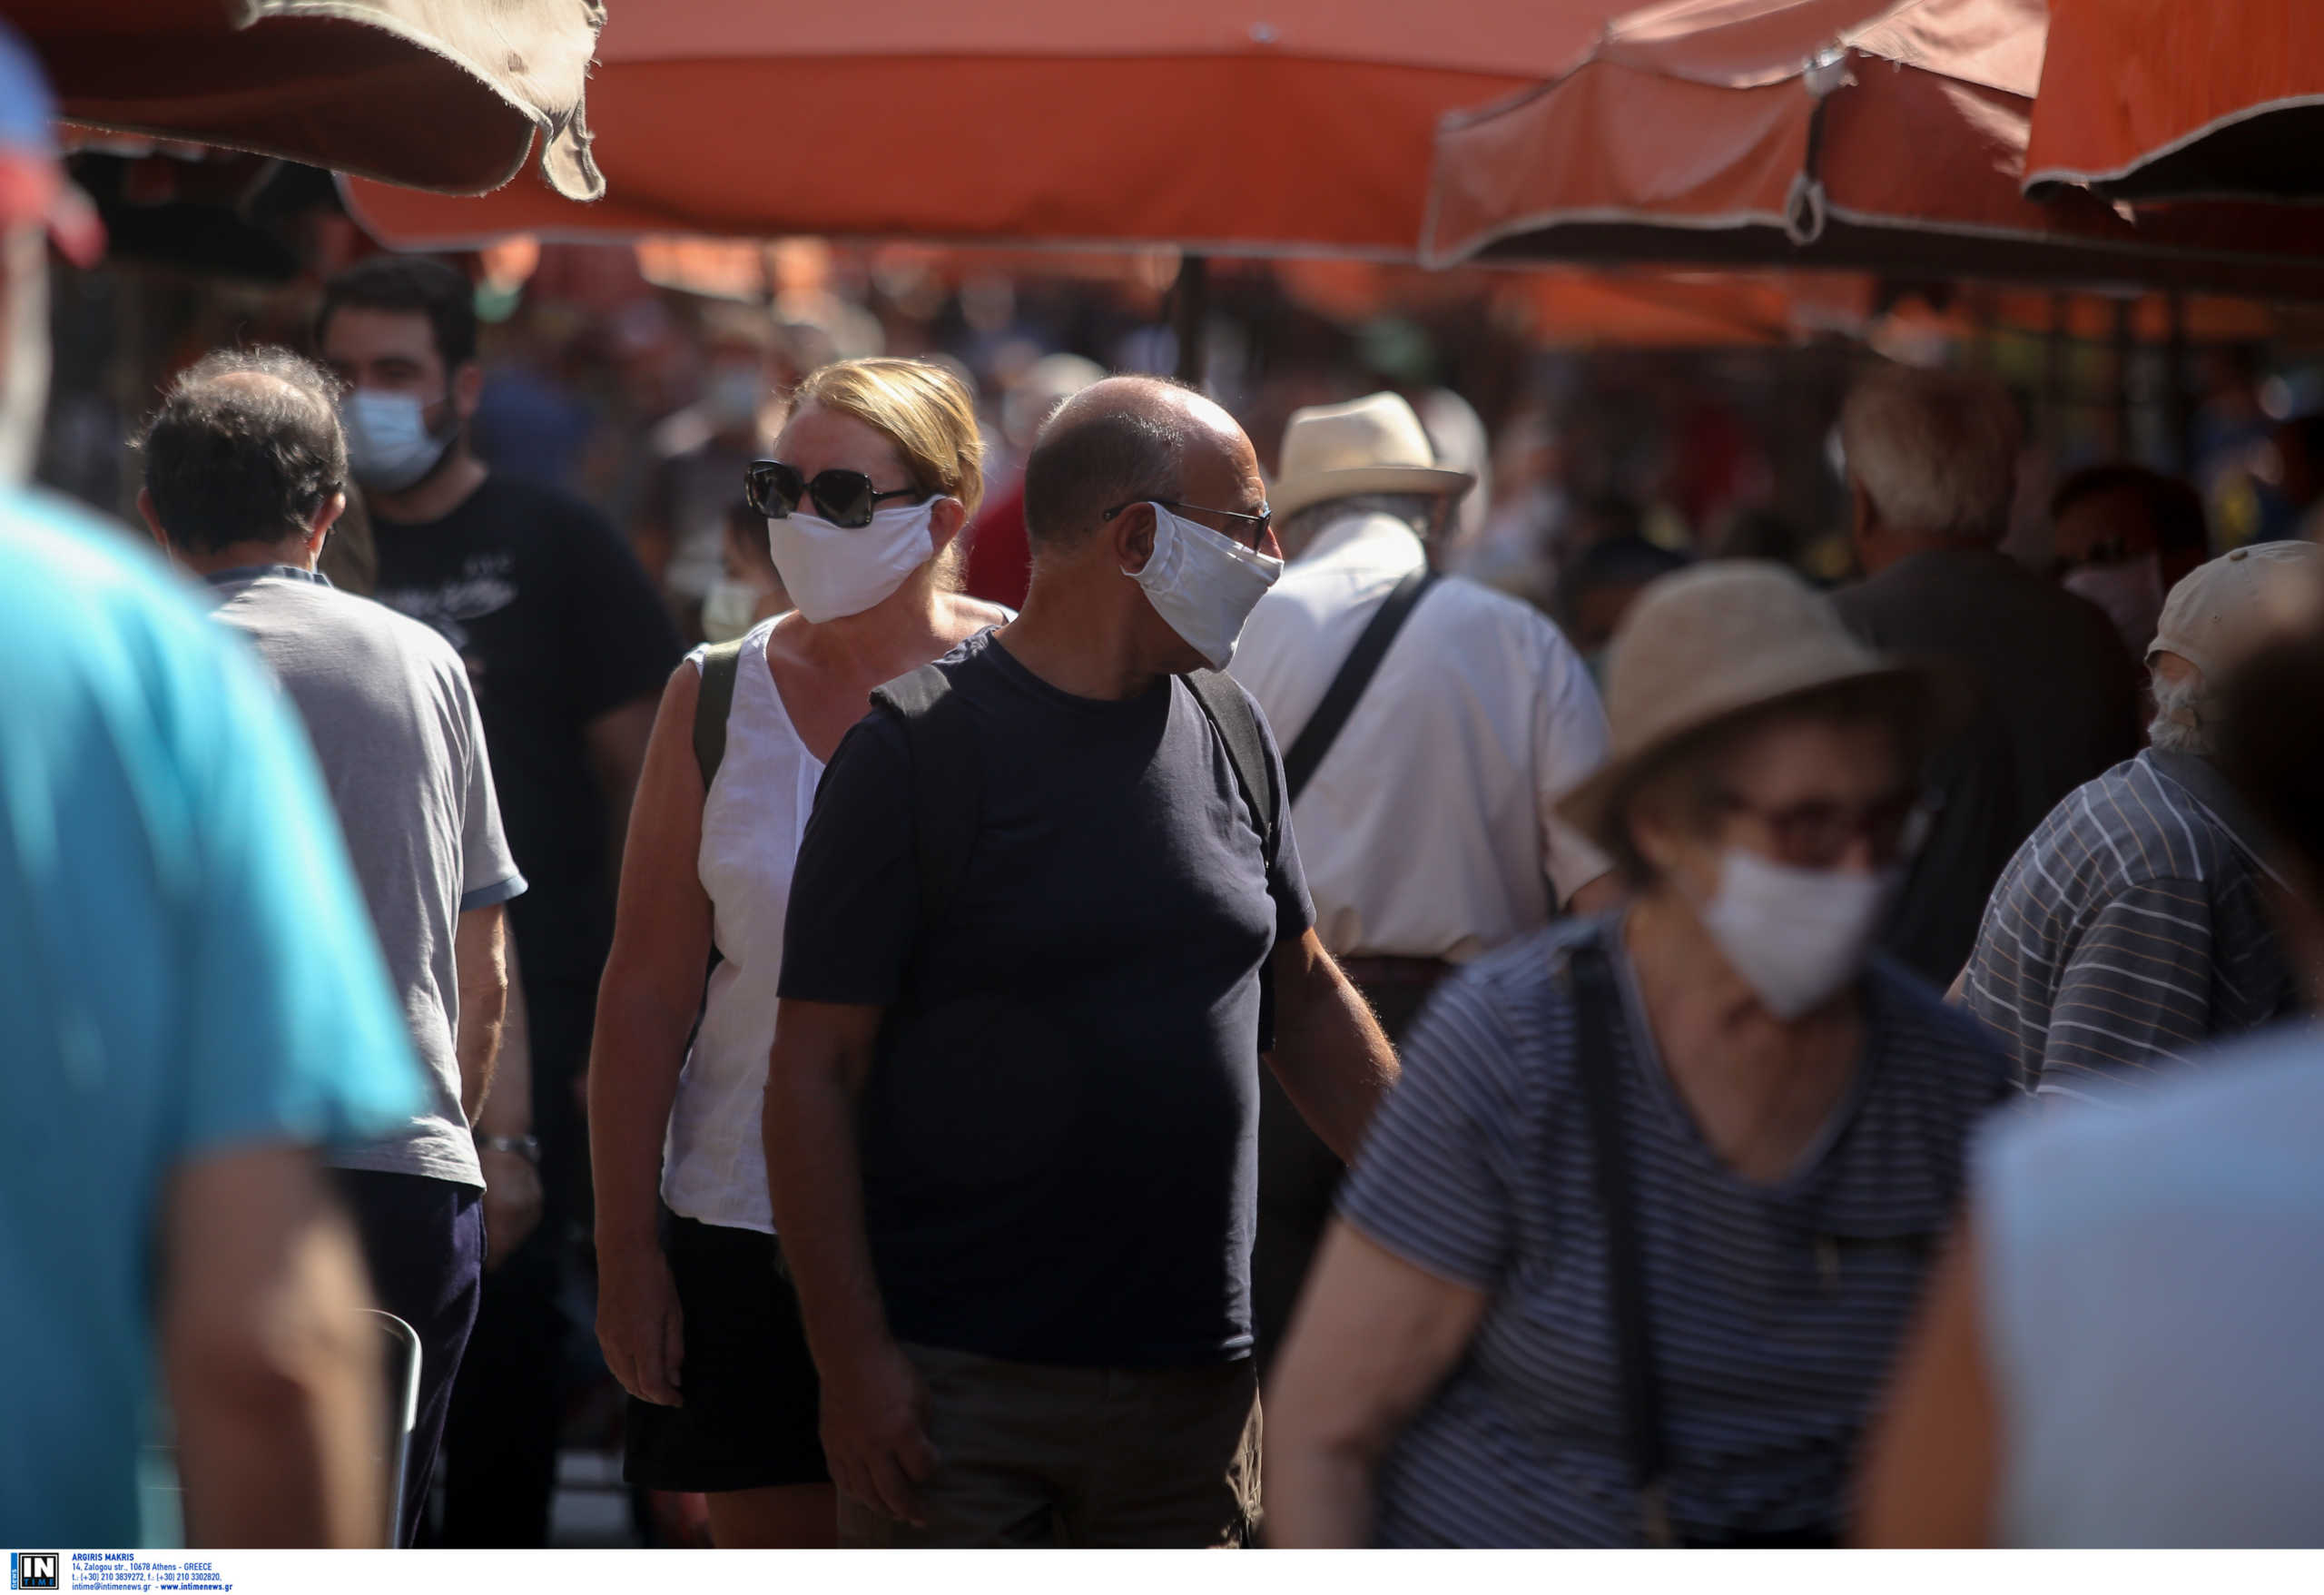 Κορονοϊός: Η έκρηξη των κρουσμάτων στην Αττική φέρνει μάσκες παντού – Τι άλλα μέτρα εξετάζονται